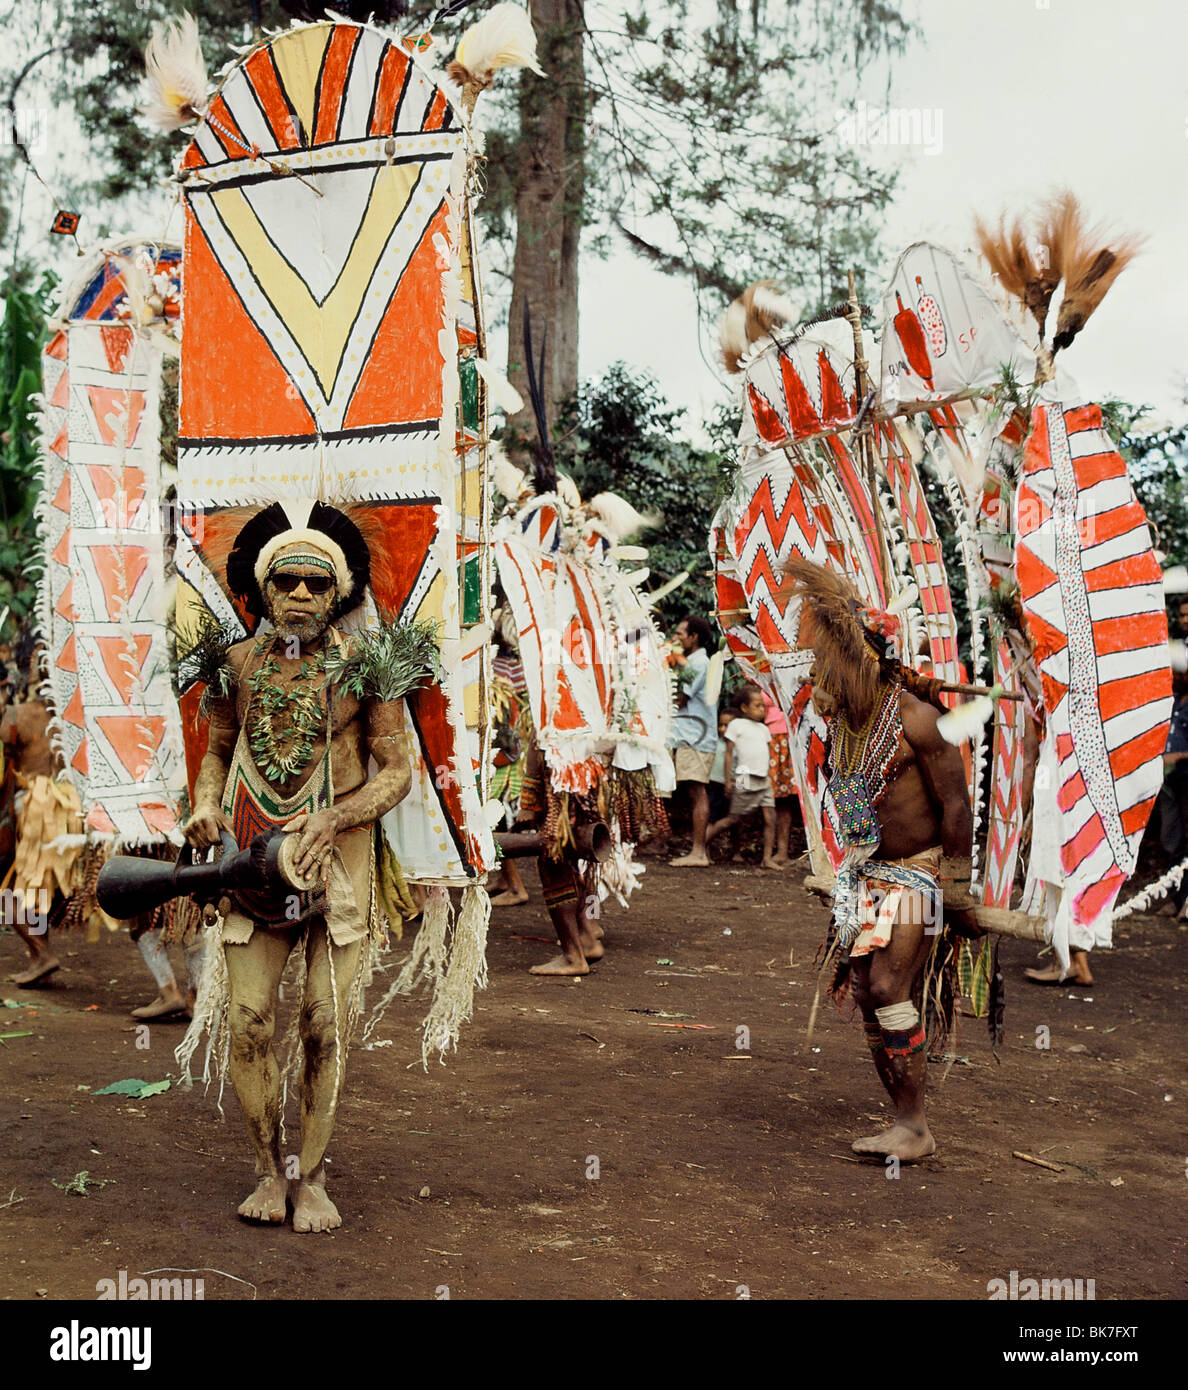 La tribu Asaro photographié en 1974 dans un costume complet pour l'ami caouette étalage de richesse, Goroka, Papouasie-Nouvelle-Guinée, du Pacifique Banque D'Images